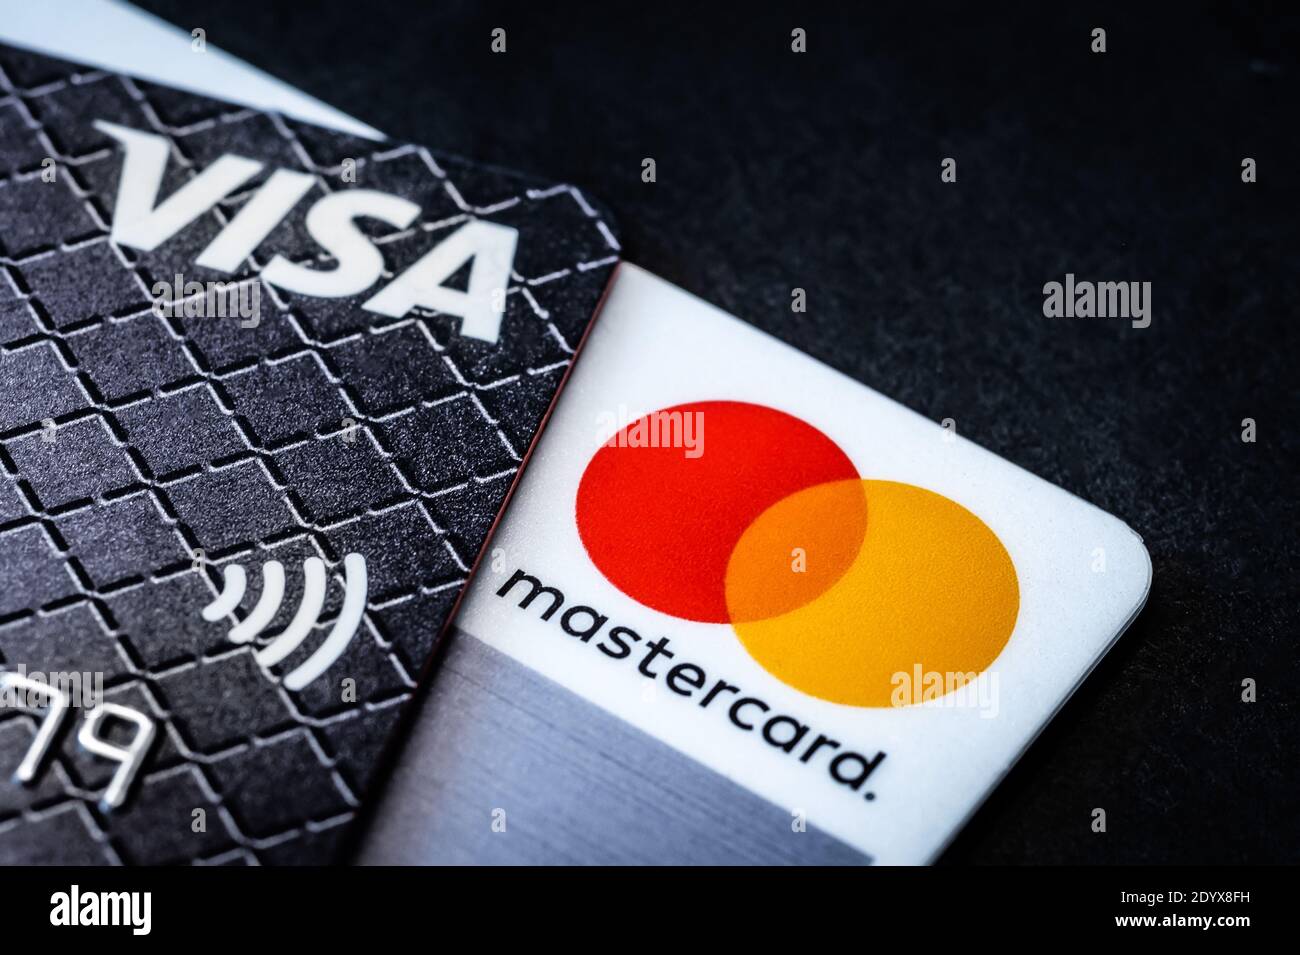 Kiev, Ucraina - 03 giugno 2020: Carte di credito Visa e Mastercard su nero Foto Stock